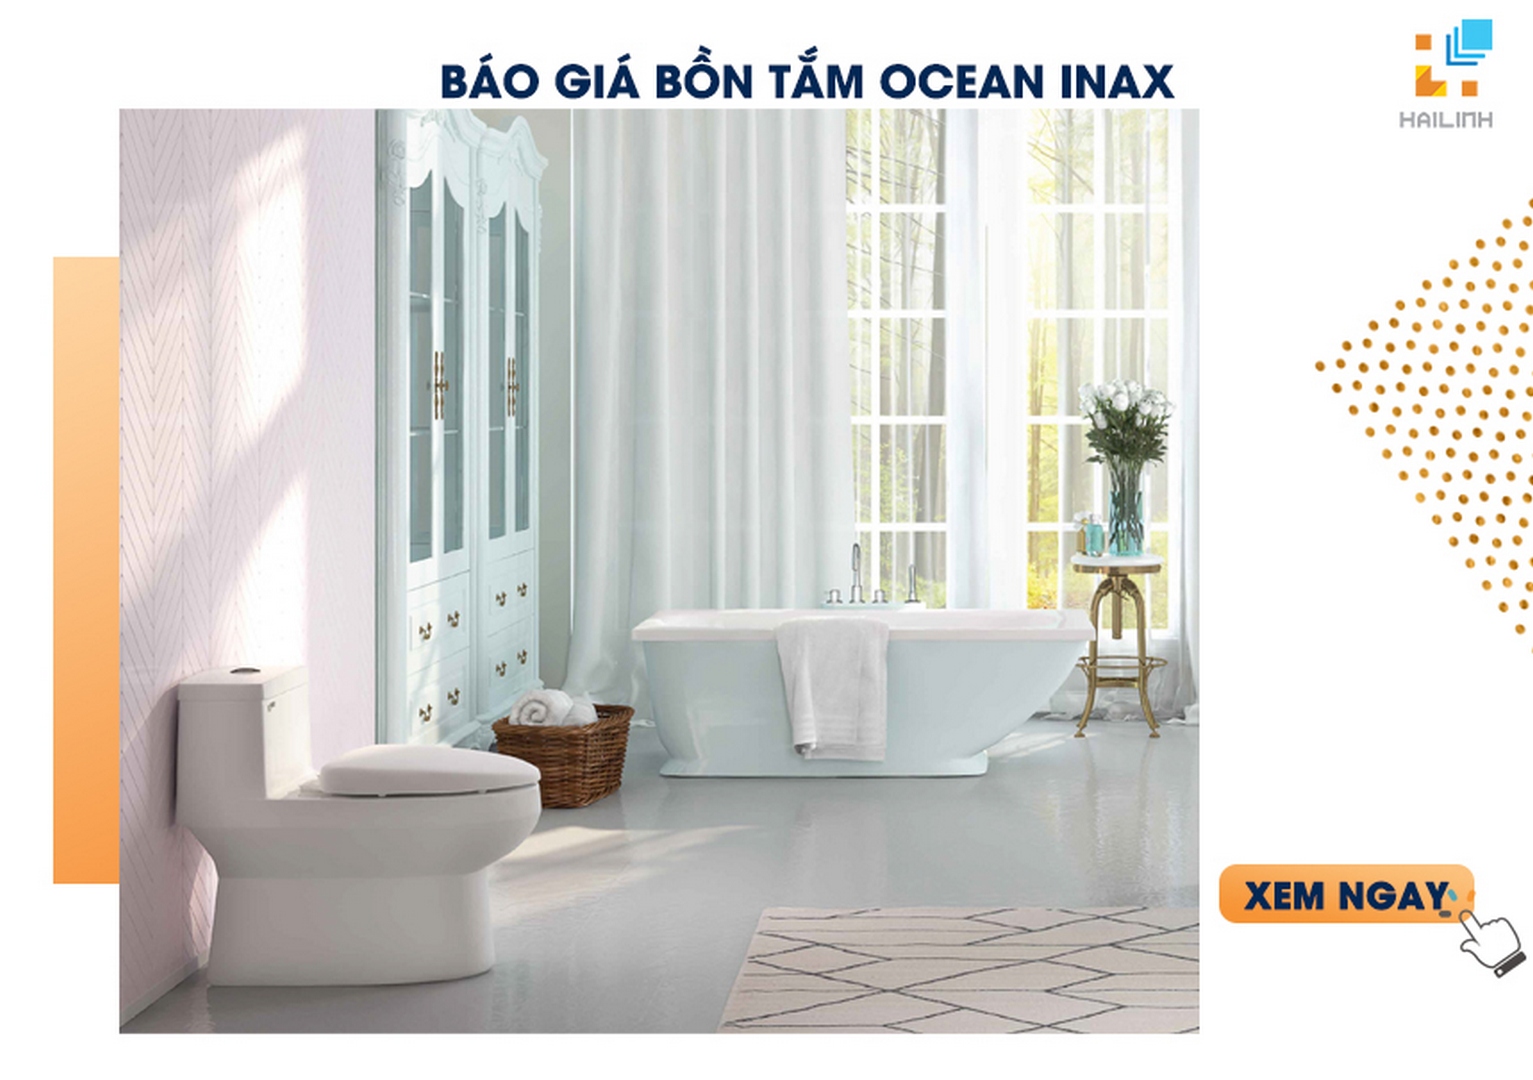 Báo giá bồn tắm OCEAN INAX 